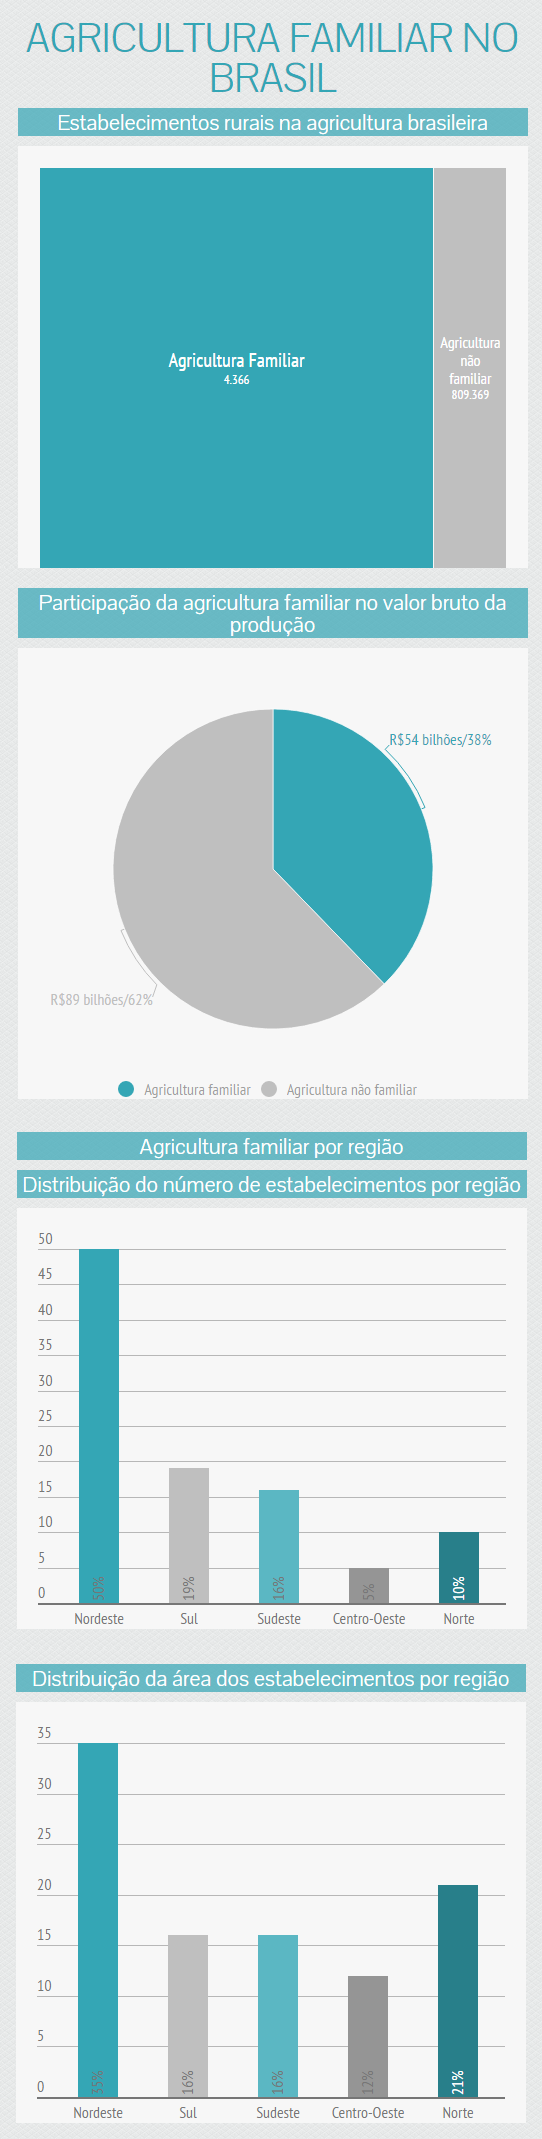 Fonte: Censo Agropecuário 2006